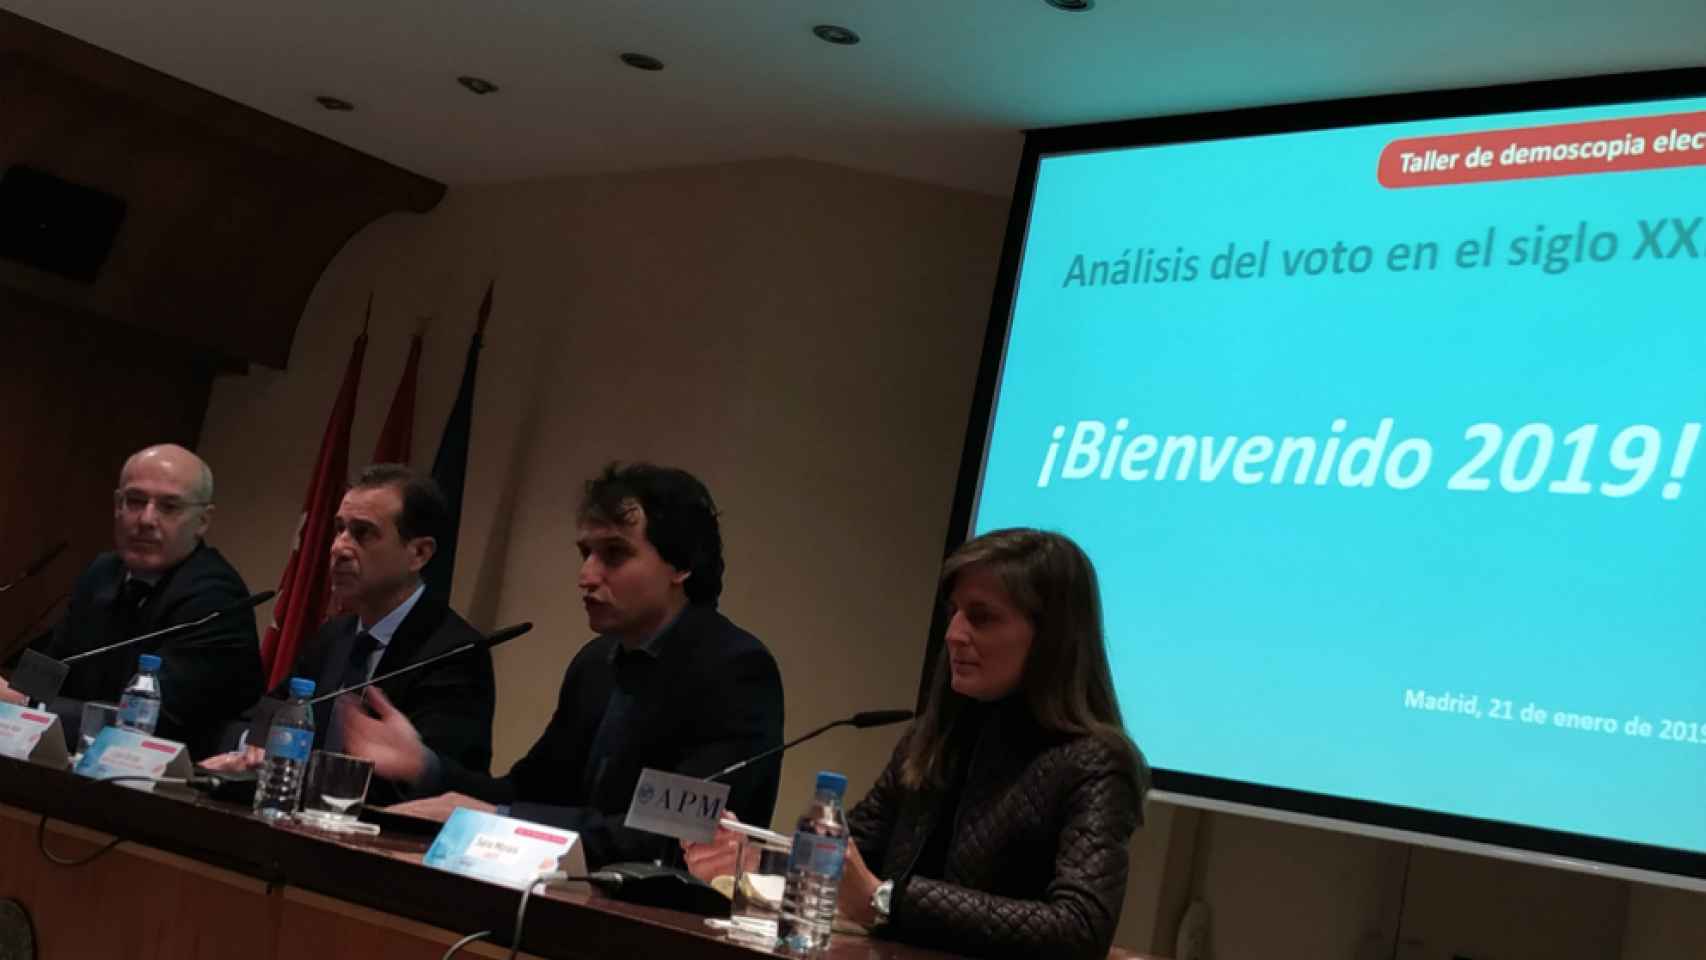 Los expertos Narciso Michavila, Gonzalo Adán, Lluís Orriols y Sara Morais, en el Taller de demoscopia electoral.